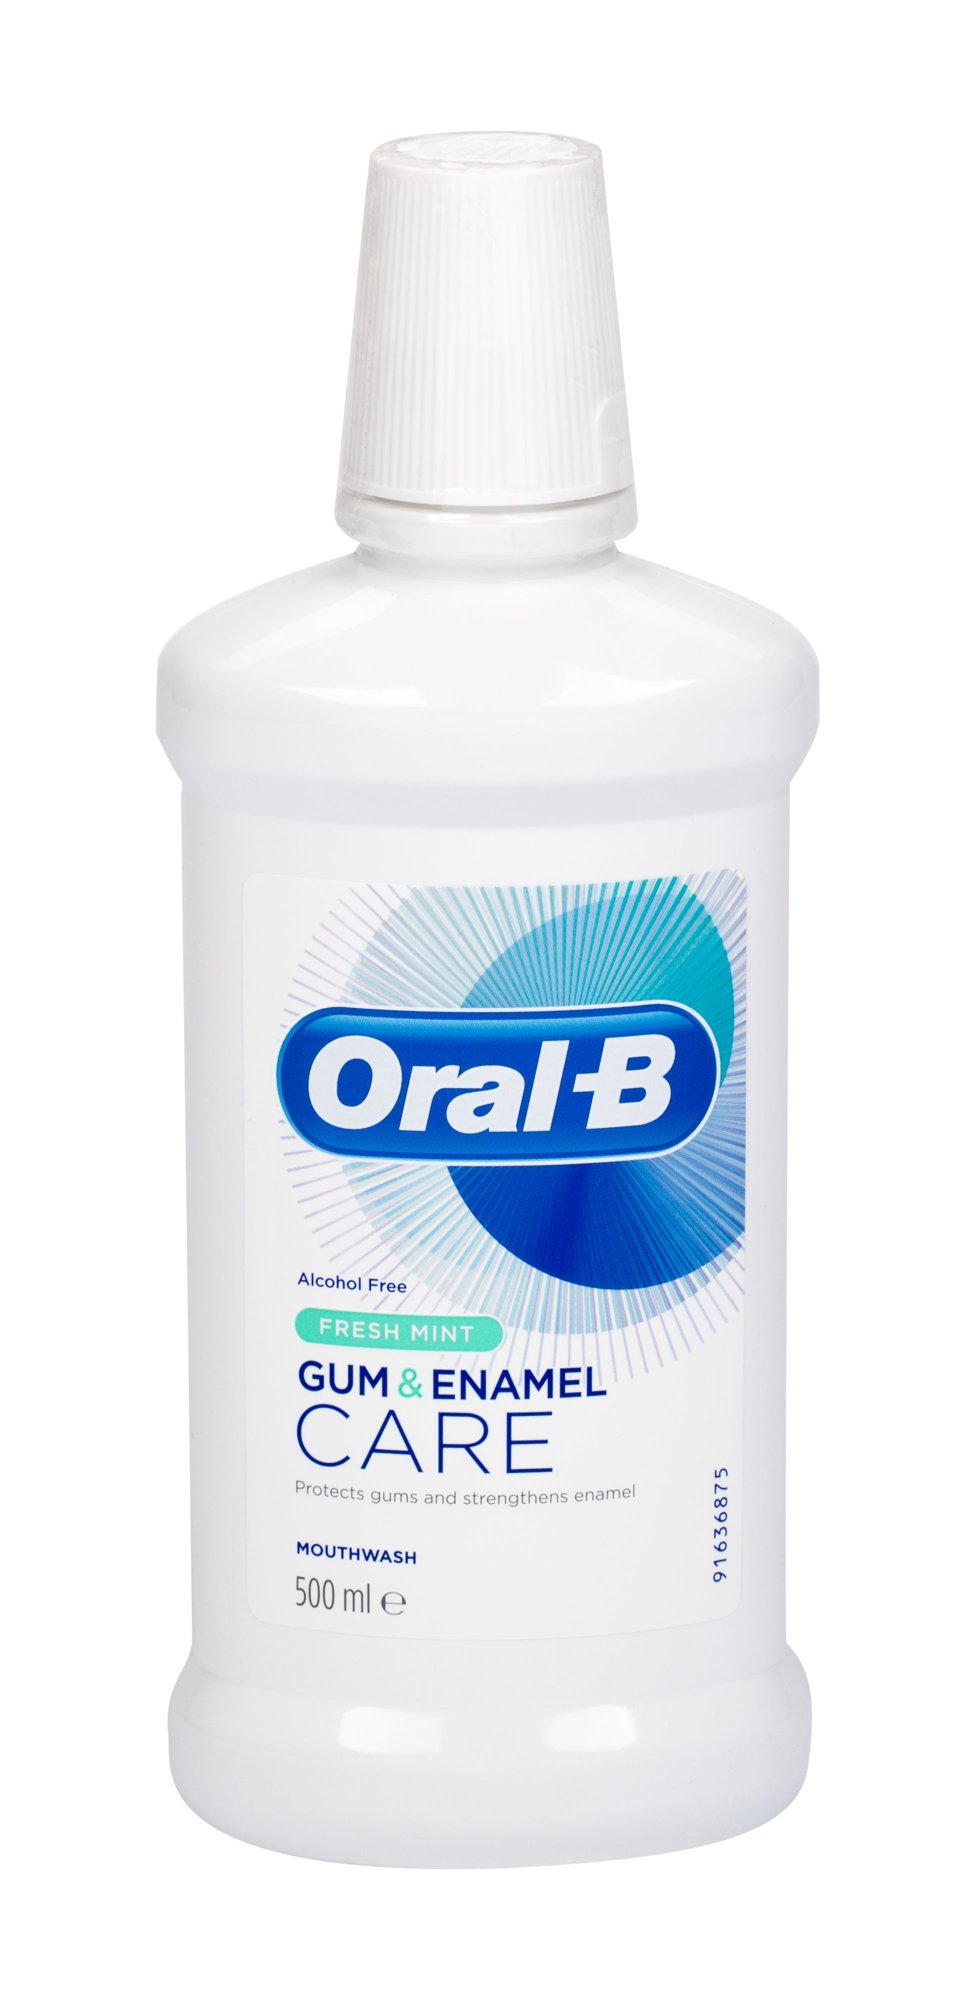 ORAL-B Gum & Enamel Care dantų skalavimo skystis